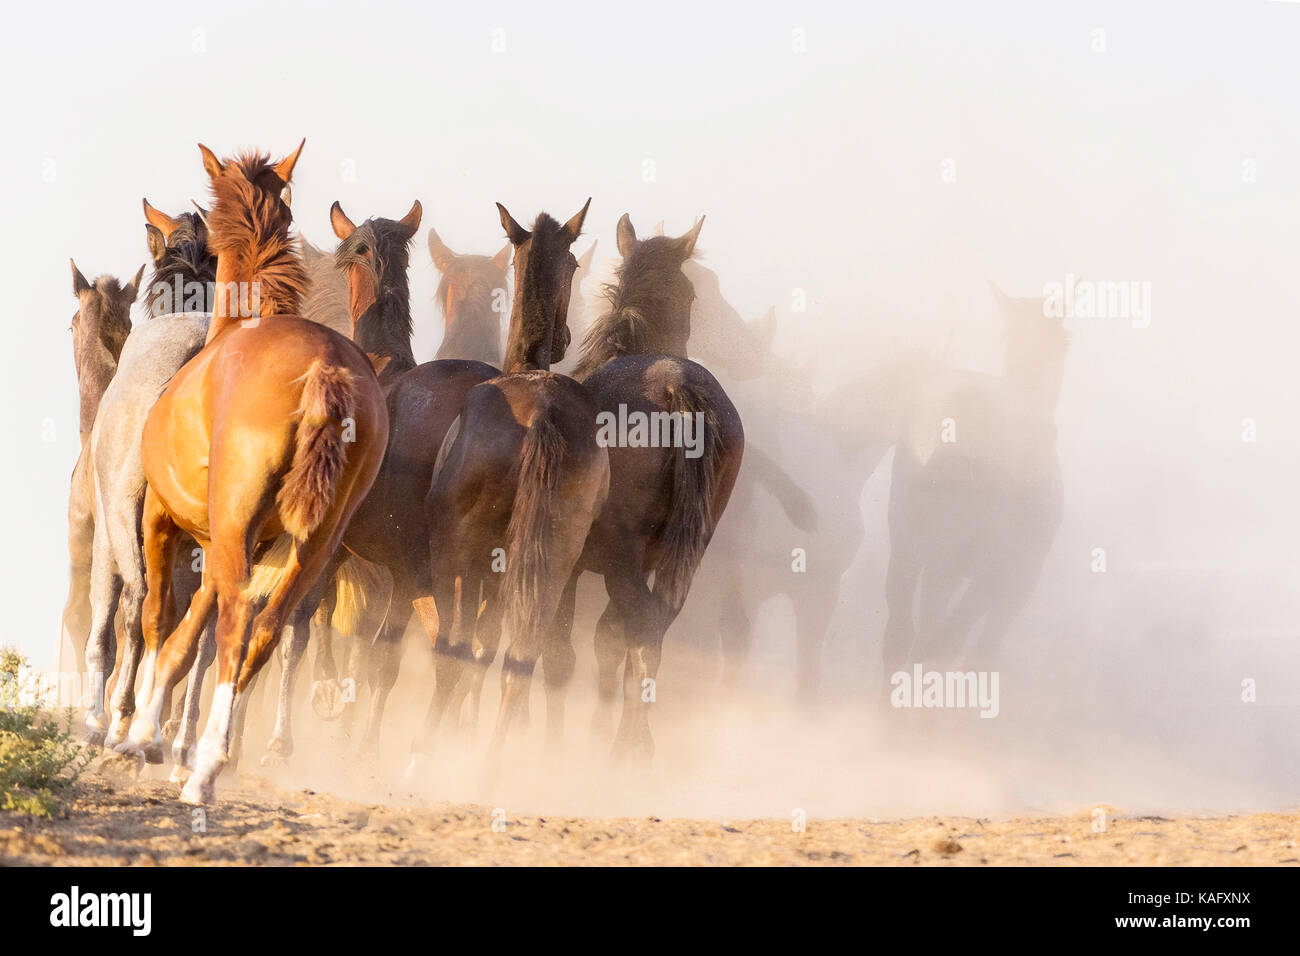 Reine Spanische Pferd, Andalusische. Herde von Jugendlichen Hengste Galopp auf trockenem Boden, von hinten gesehen. Spanien Stockfoto